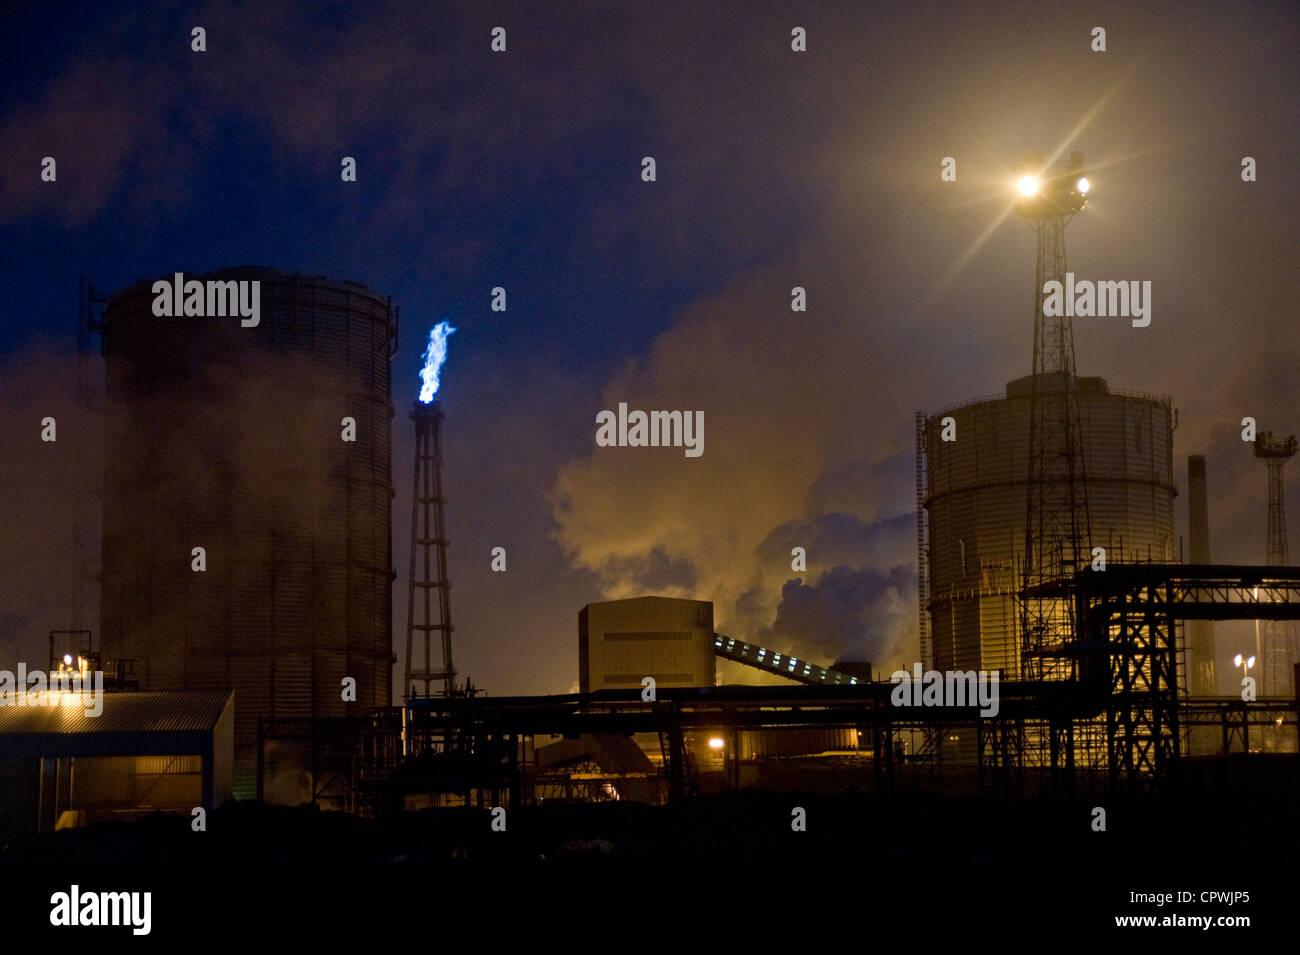 Nacht im ehemaligen britischen Stahlwerk in Redcar, jetzt Betrieben von sahaviriya Stahlindustrie (SSI). Stockfoto